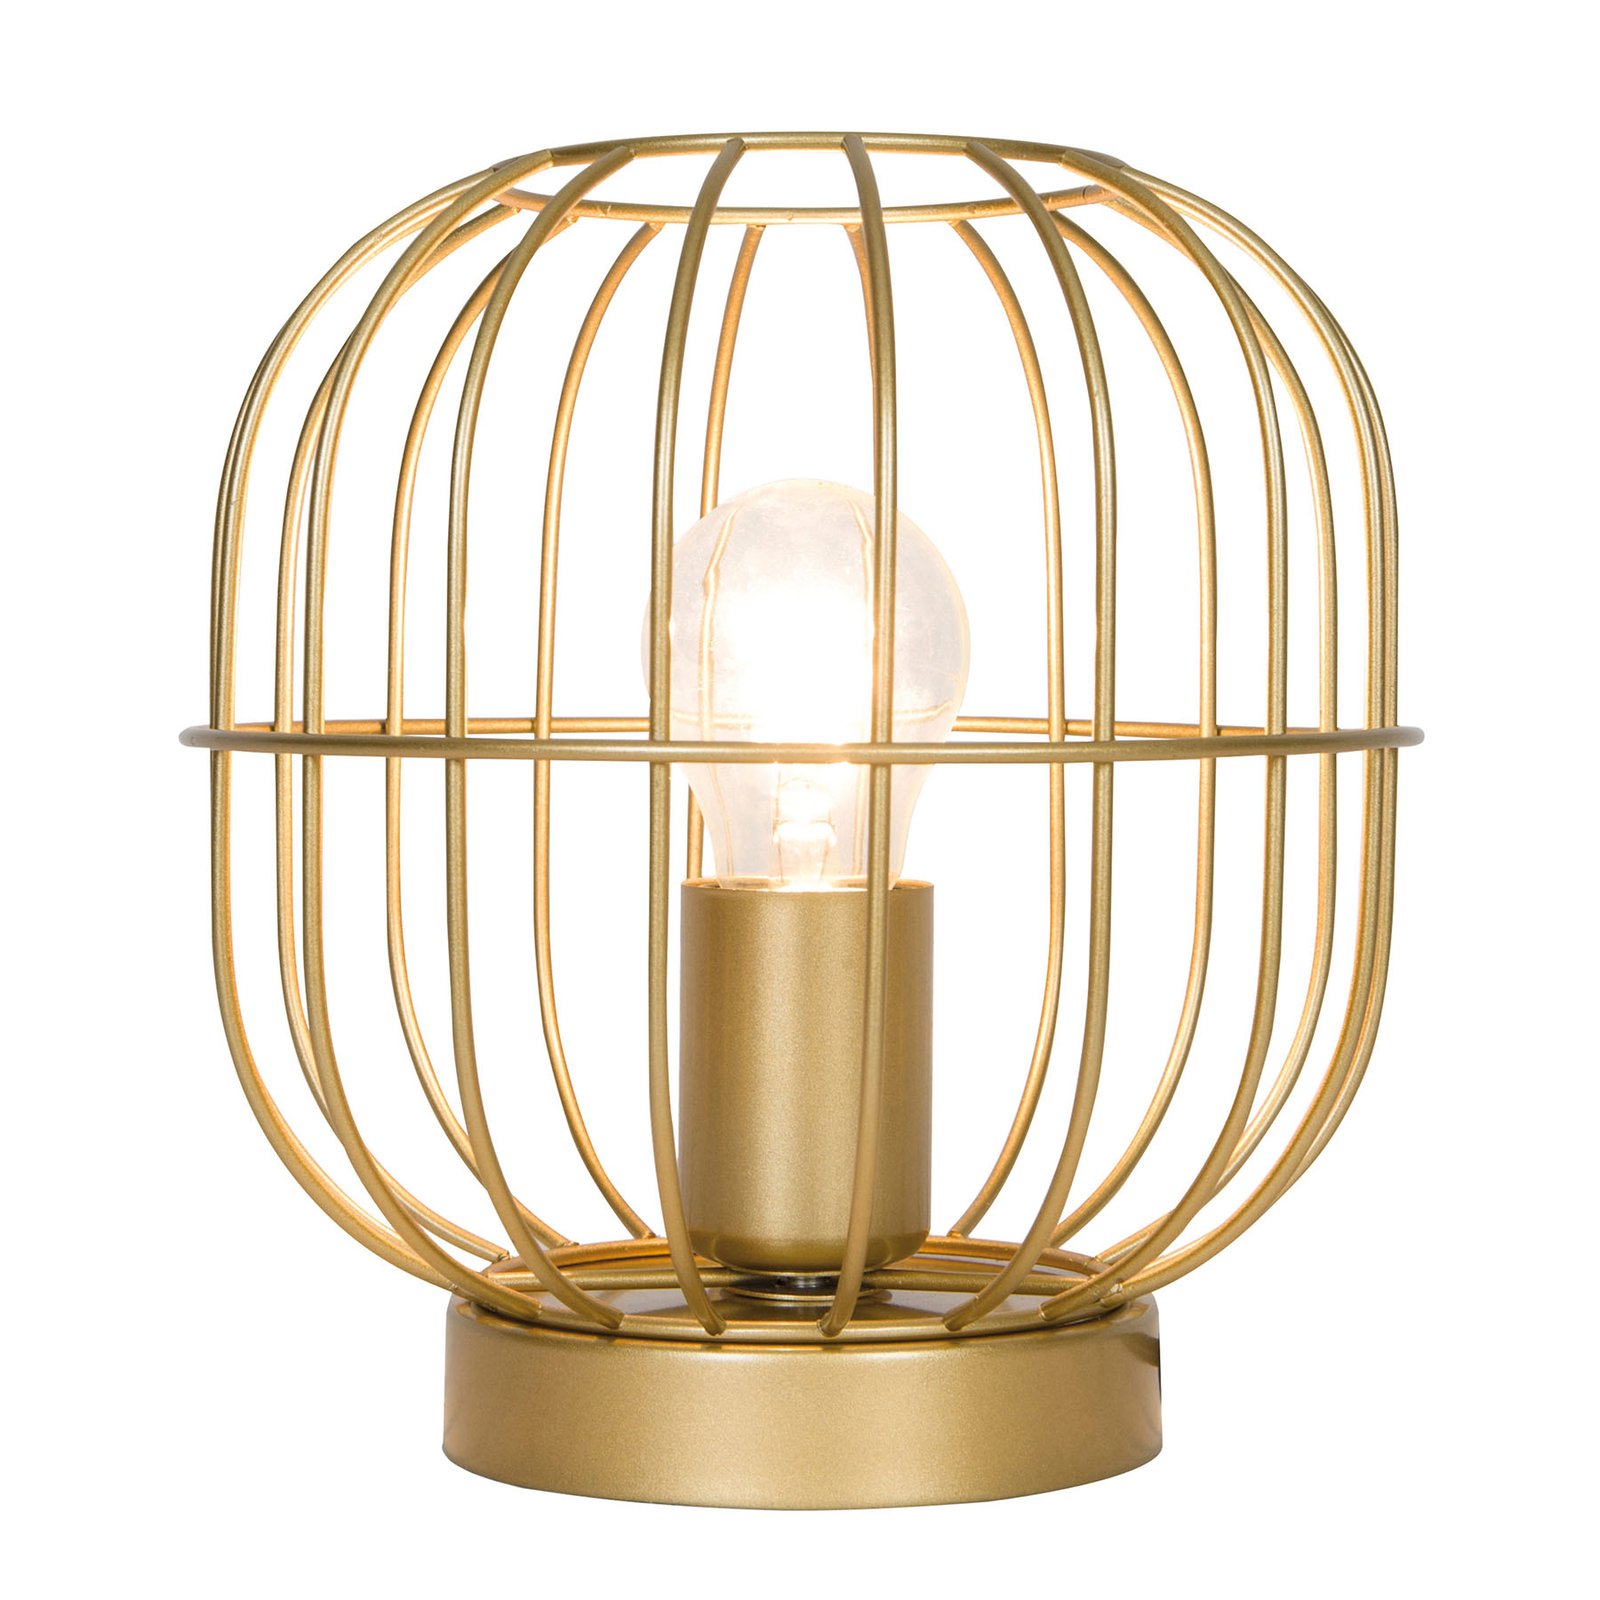 Tafellamp Zenith in kooivorm, goud